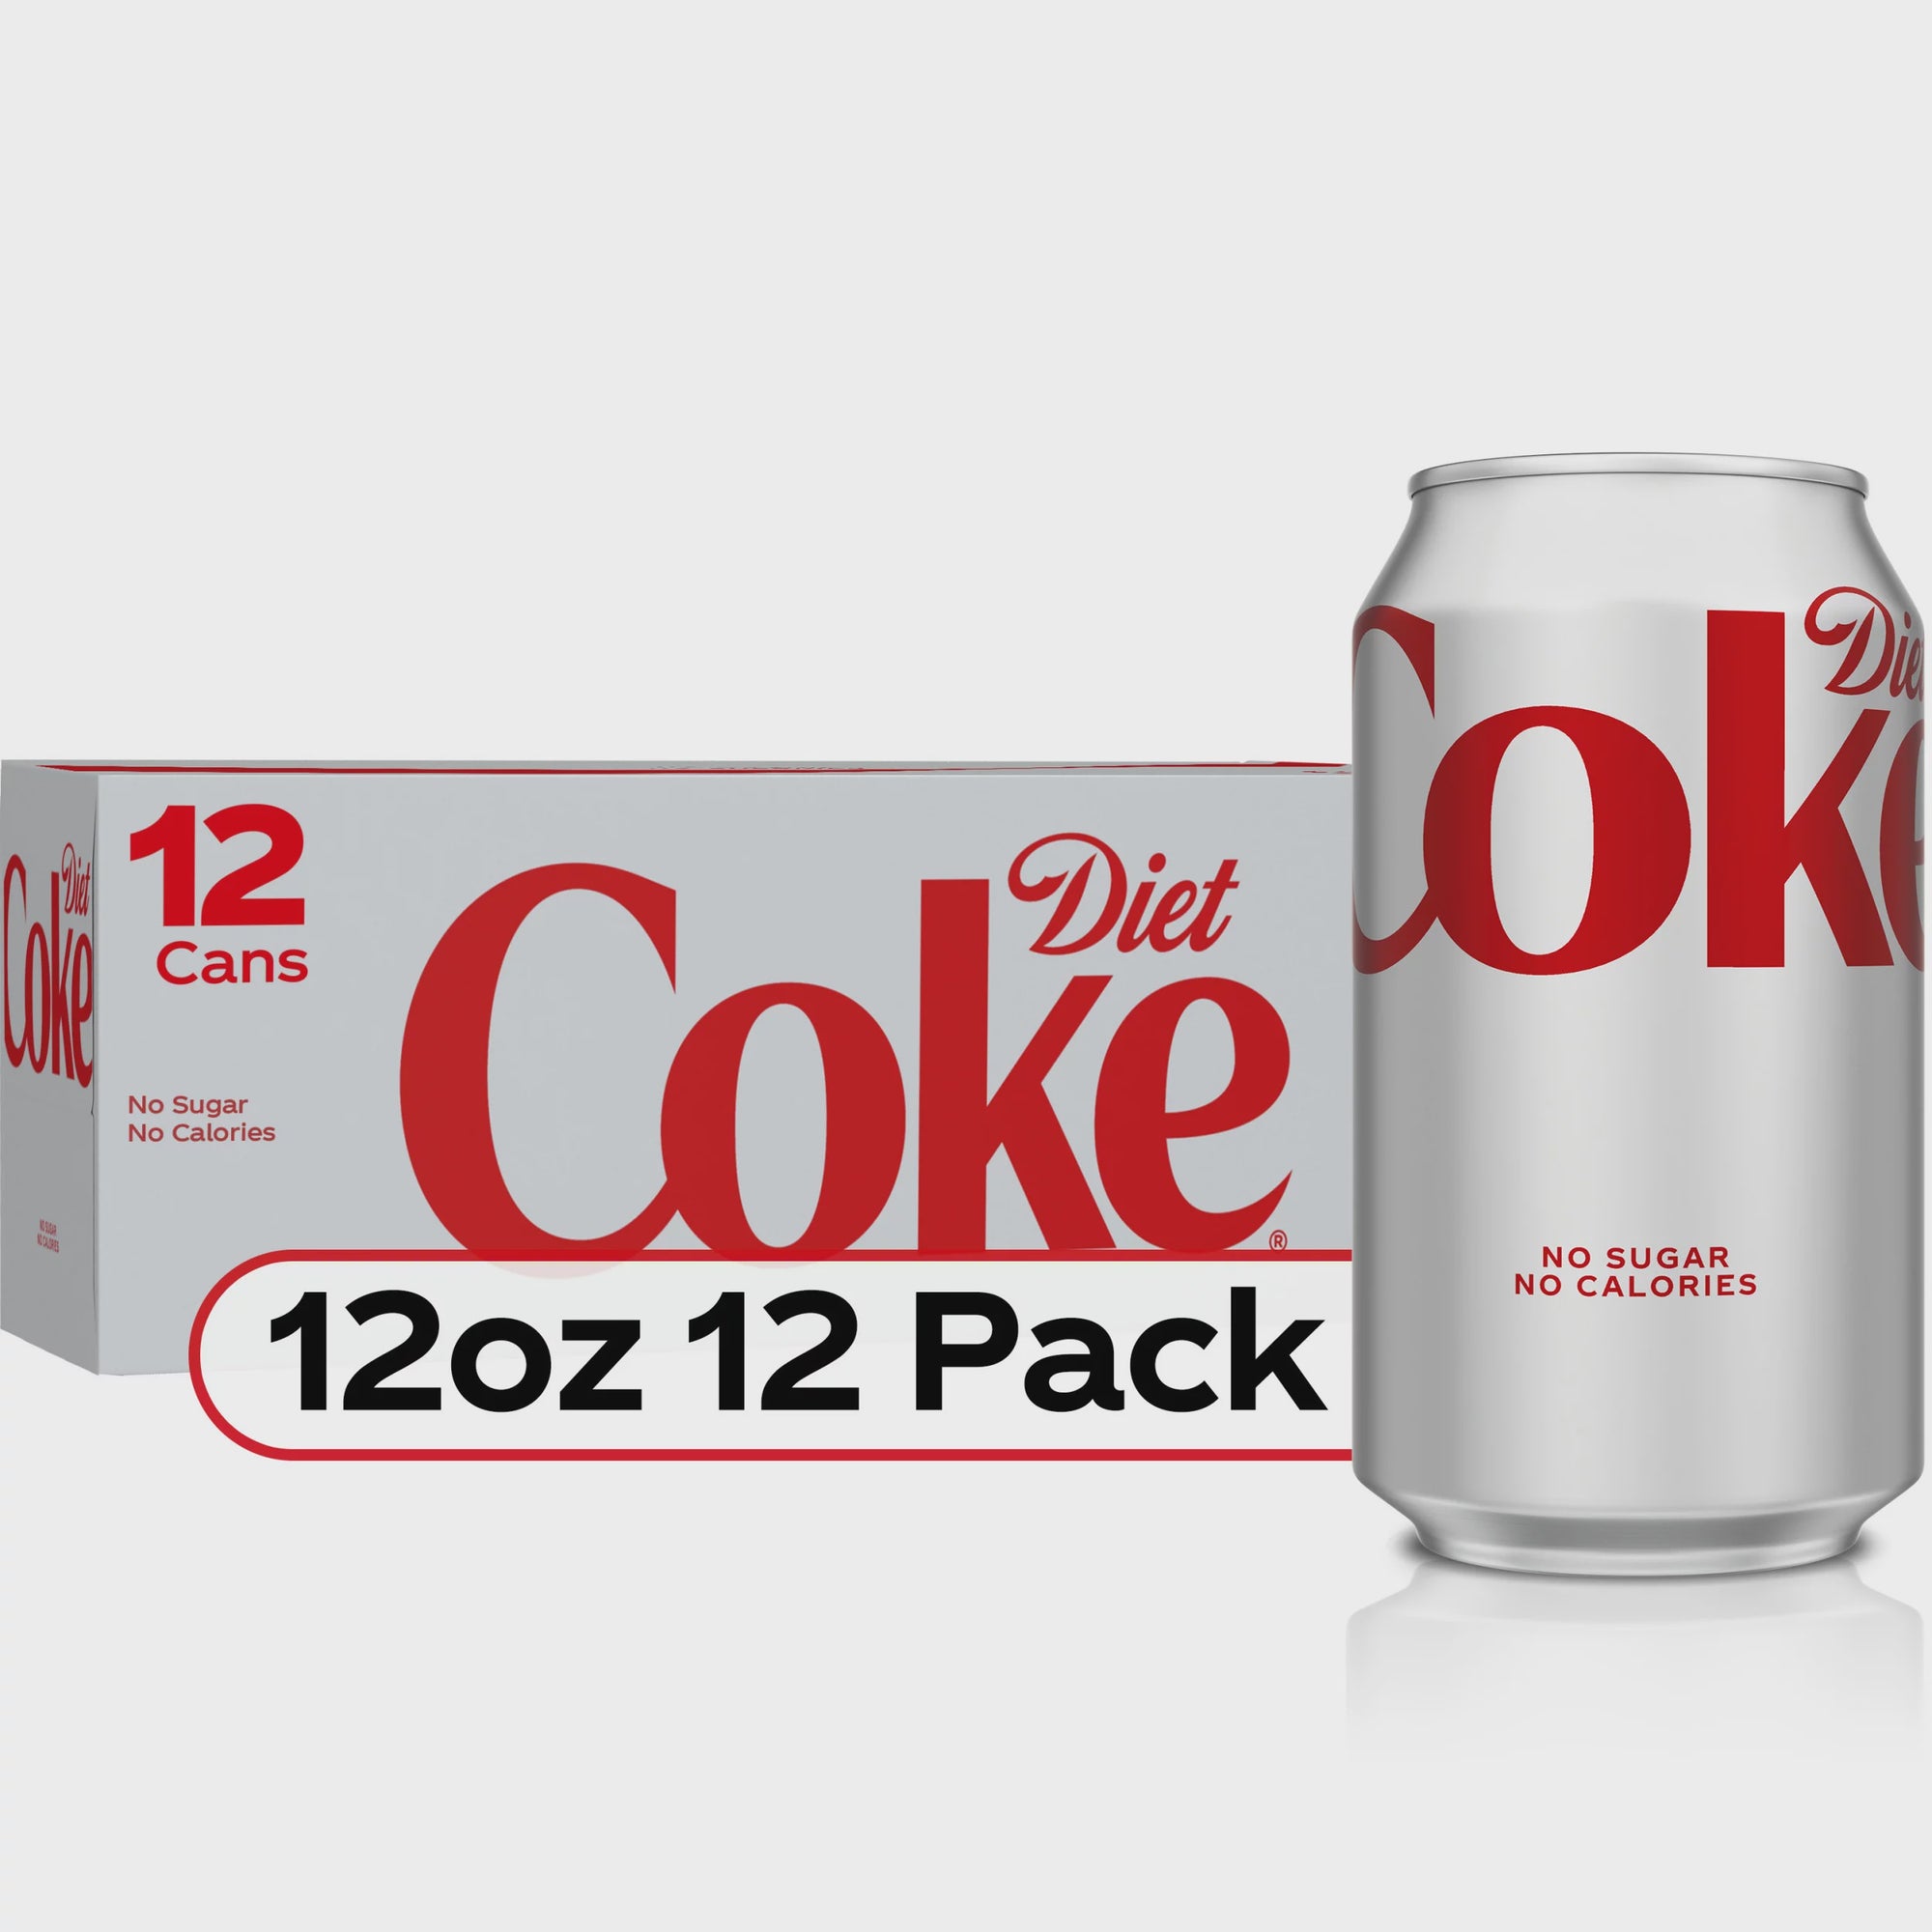 Diet Coke 12pk/12oz. (includes deposit)